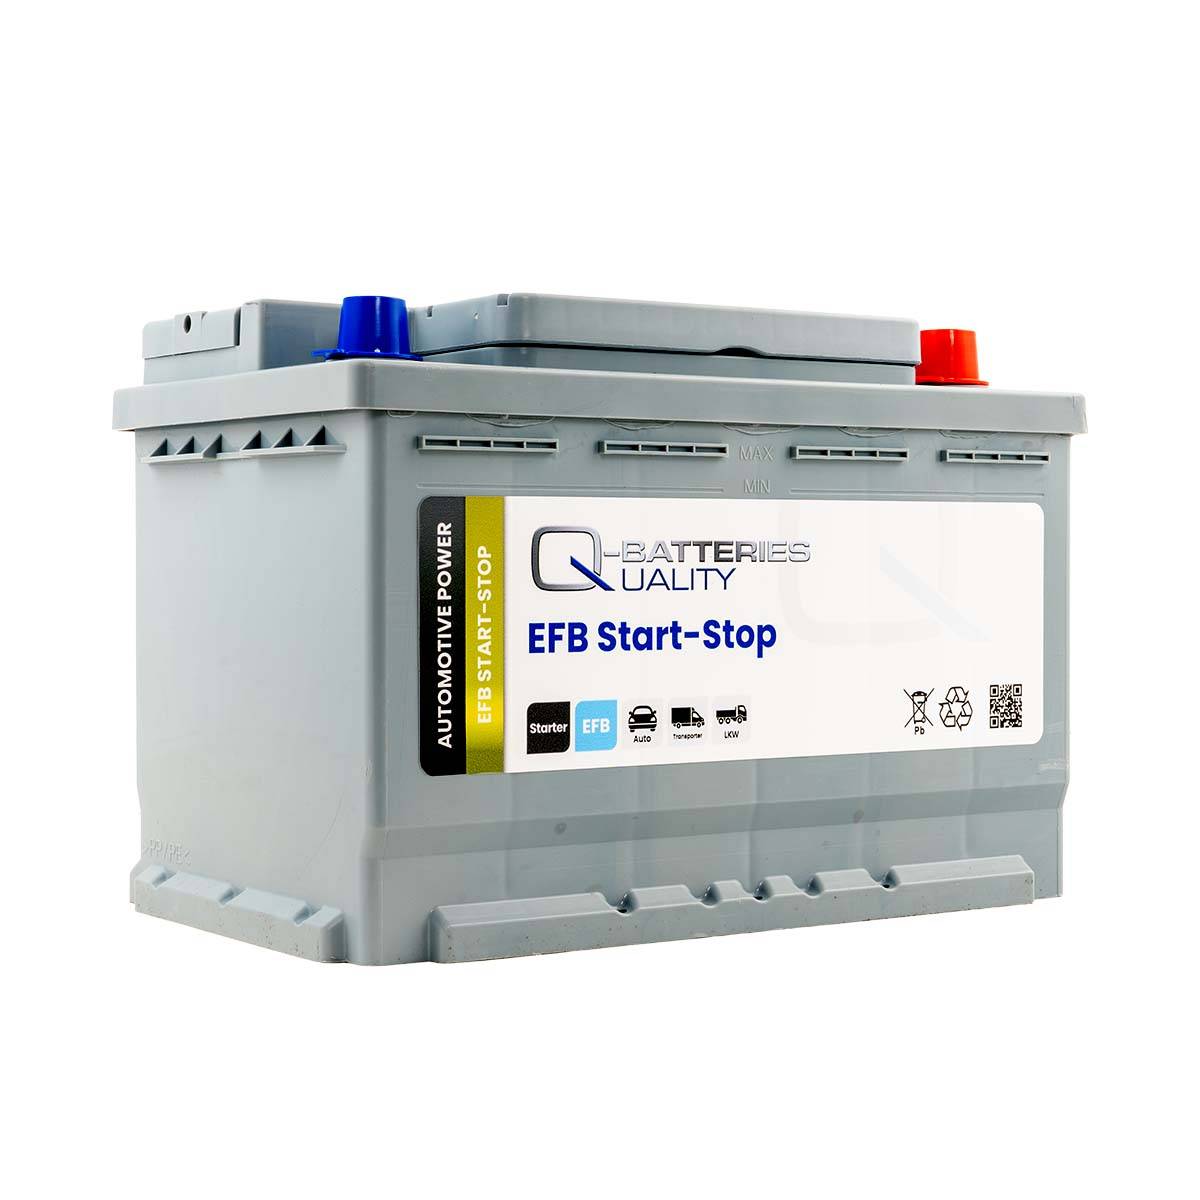 Exide EL700 12V EFB Autobatterie 70Ah